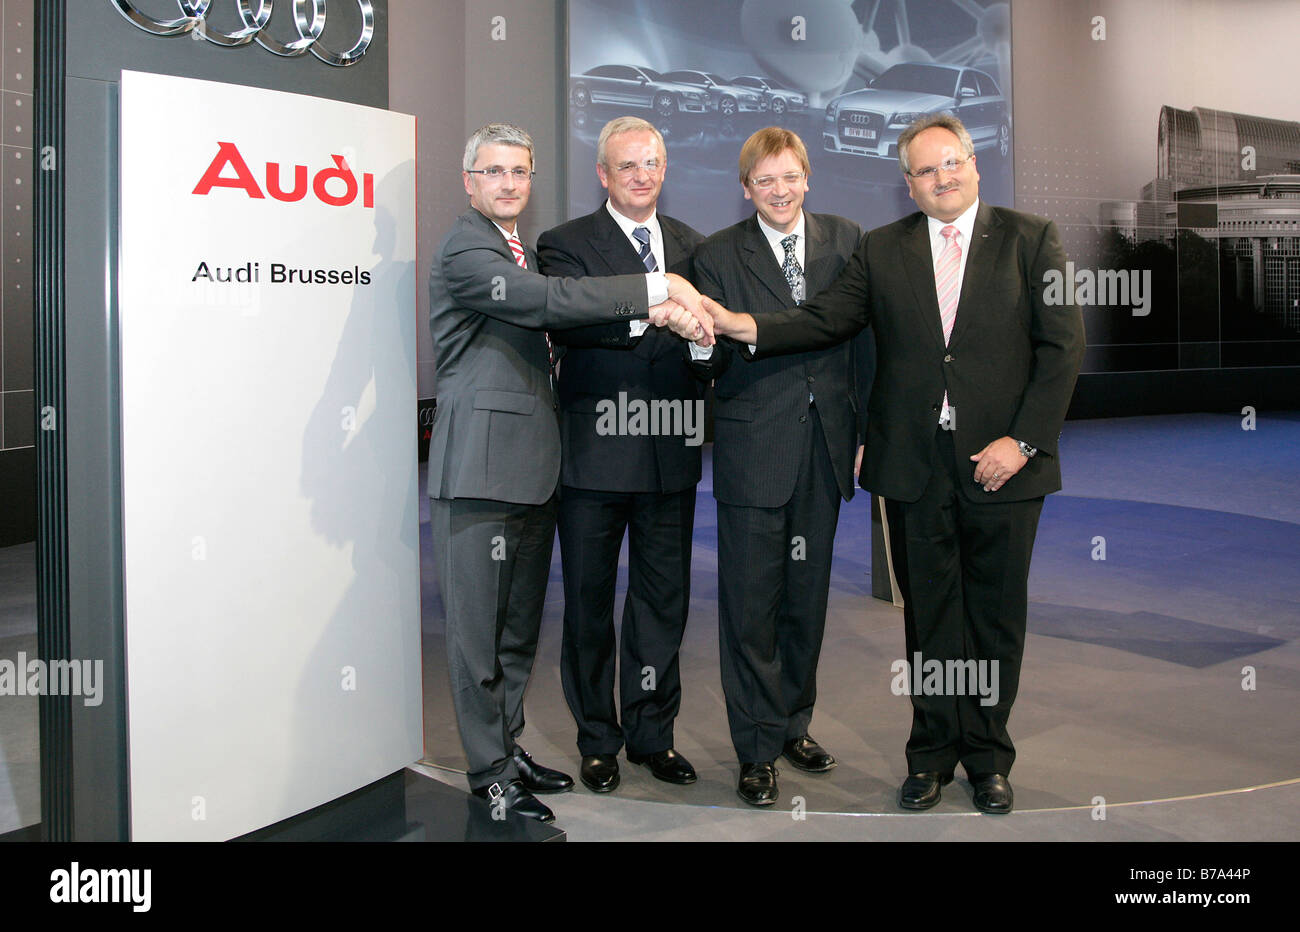 Rupert Stadler, auf der linken Seite, Vorstandsvorsitzender der Audi AG, Martin Winterkorn, 2. von links, Vorstandsvorsitzender der Volkswagen AG, Gu Stockfoto